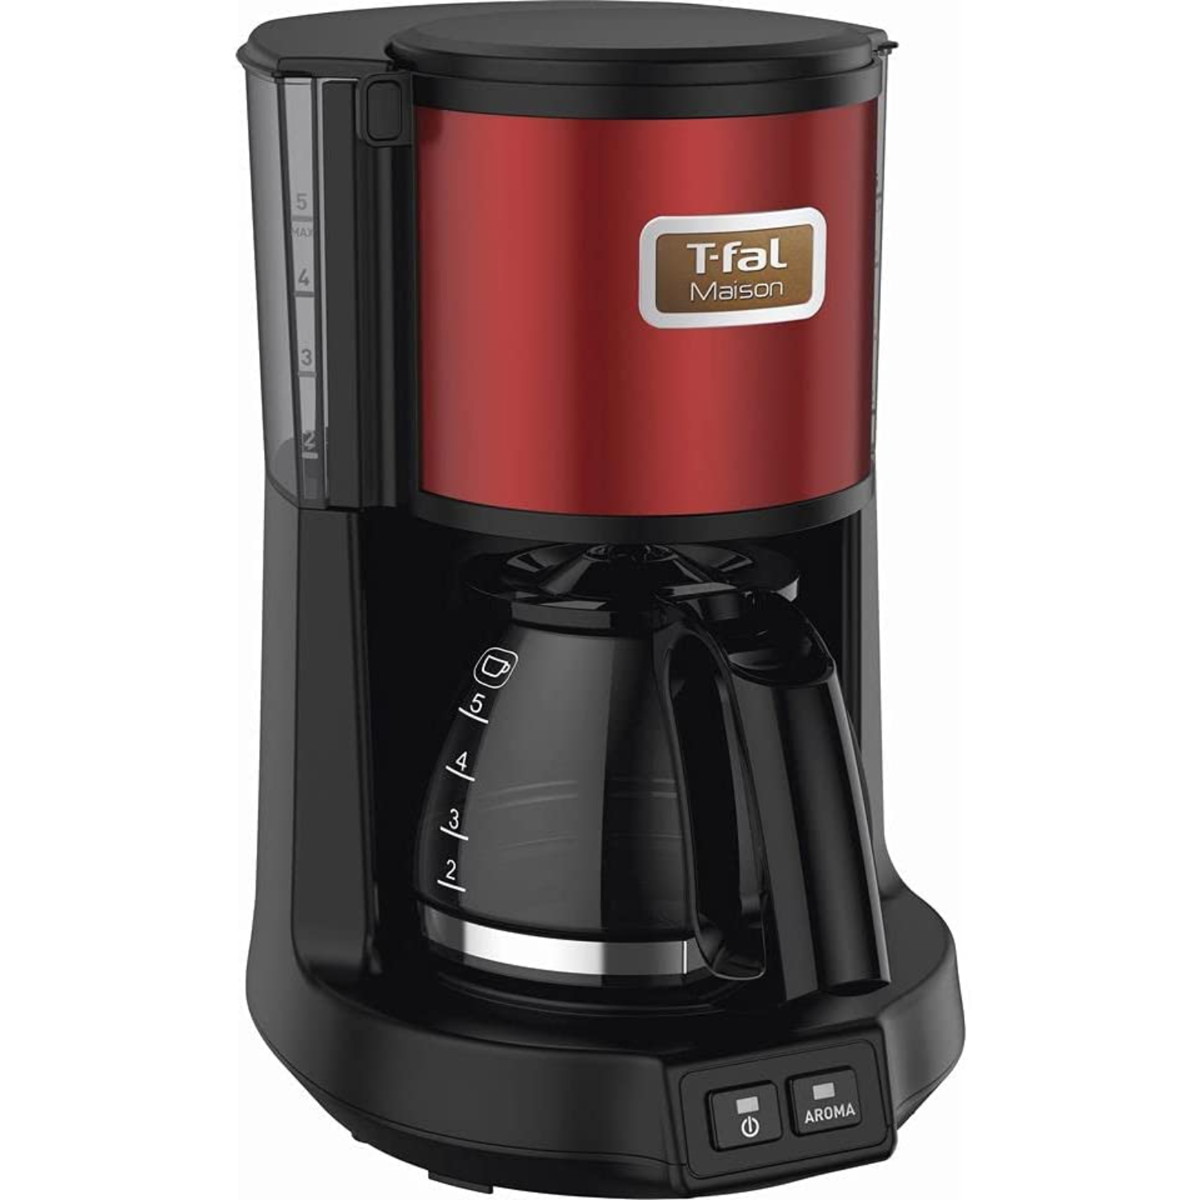 T-fal コーヒーメーカー 0.6L/5杯用 選べる2つのモード ドリップ式 コーヒーメーカー メゾン ワインレッド